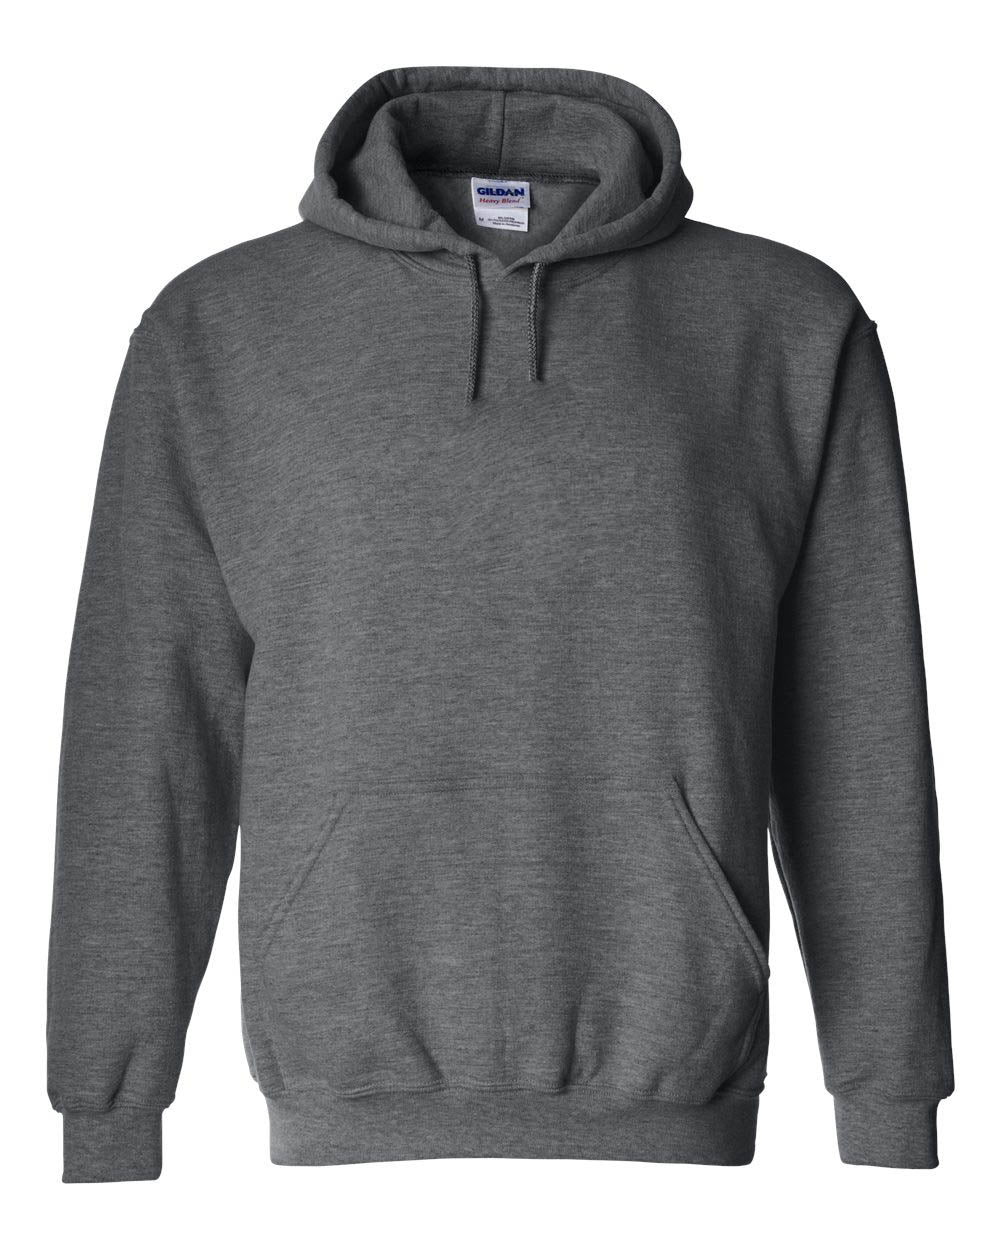 Glen Meadow Design 2 Hooded Sweatshirt